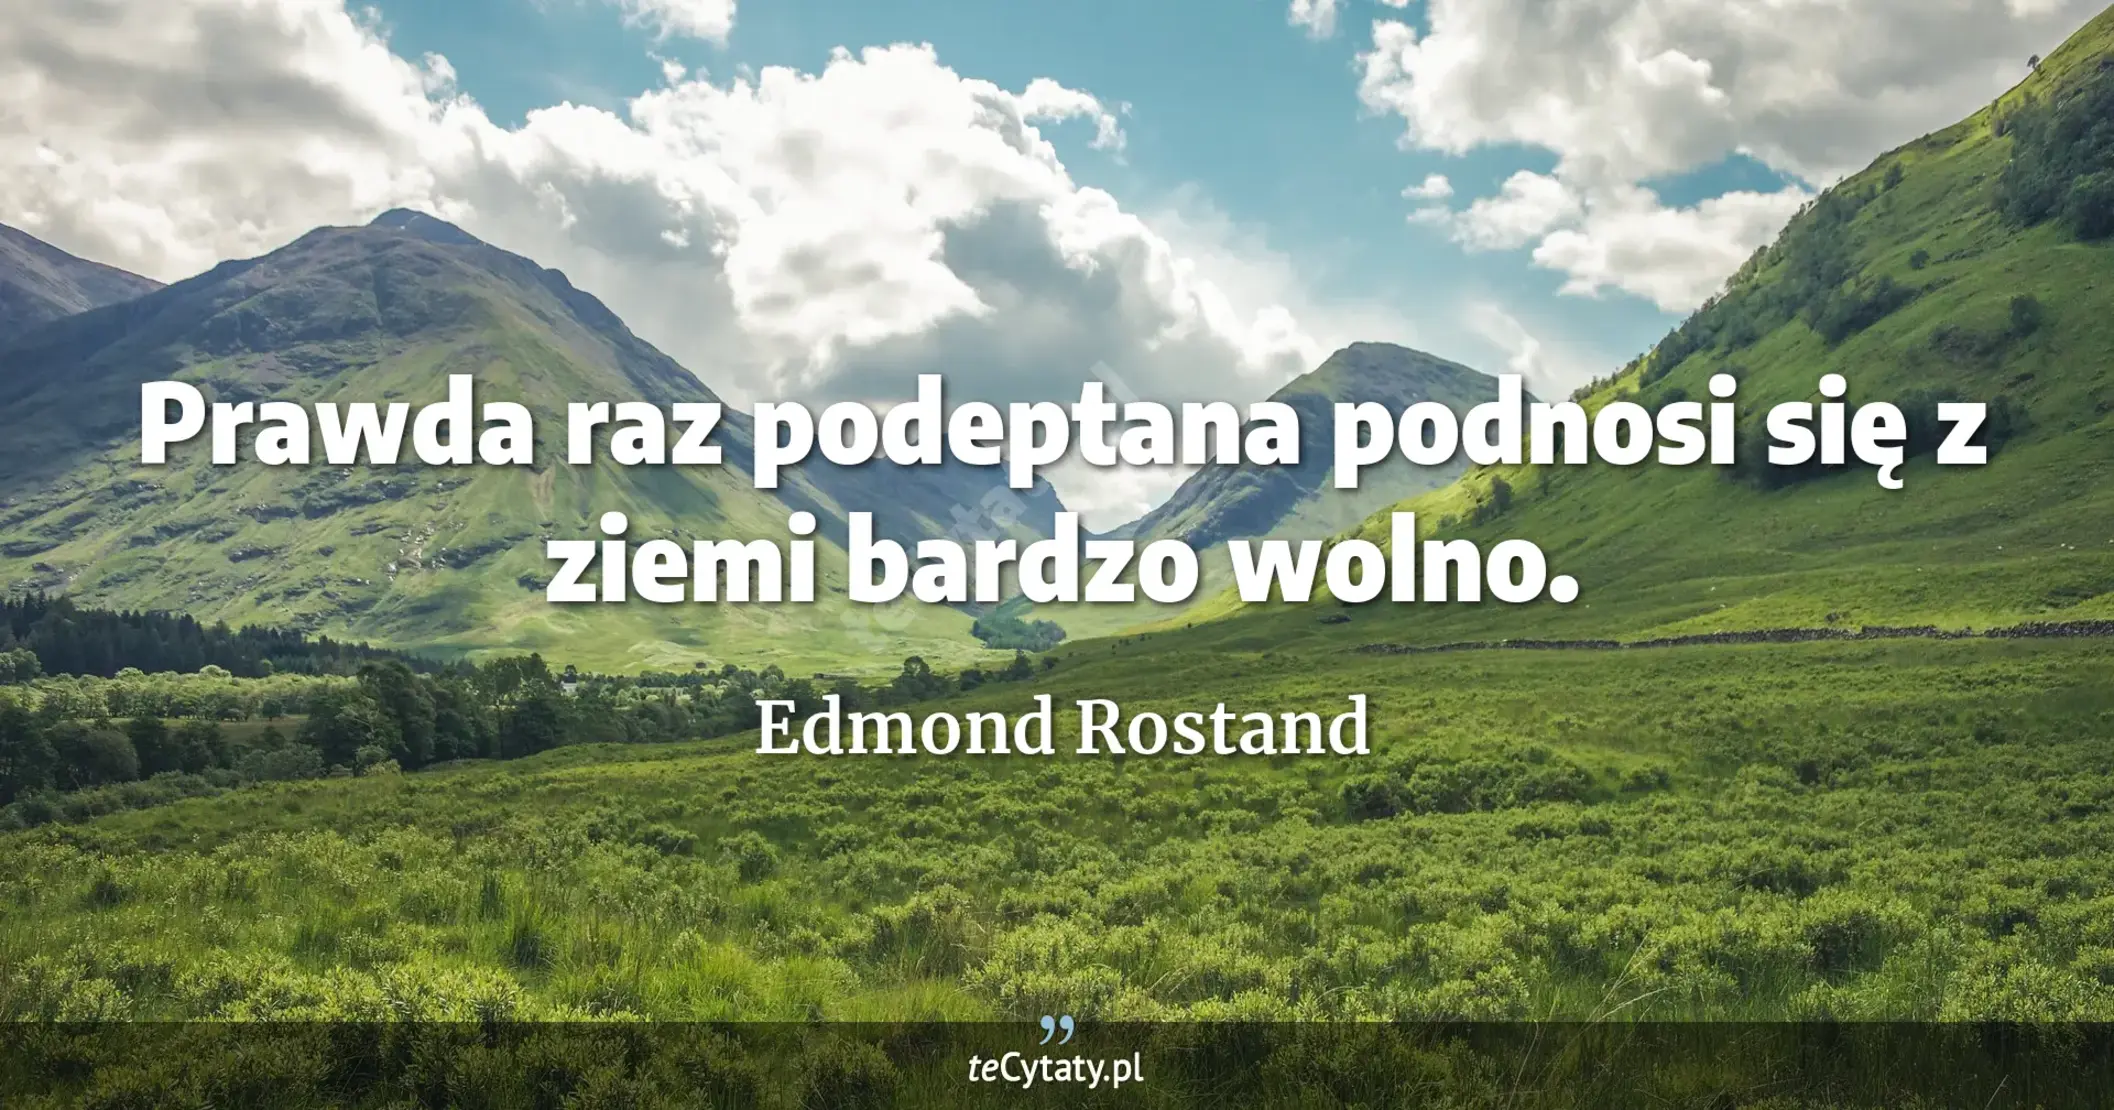 Prawda raz podeptana podnosi się z ziemi bardzo wolno. - Edmond Rostand